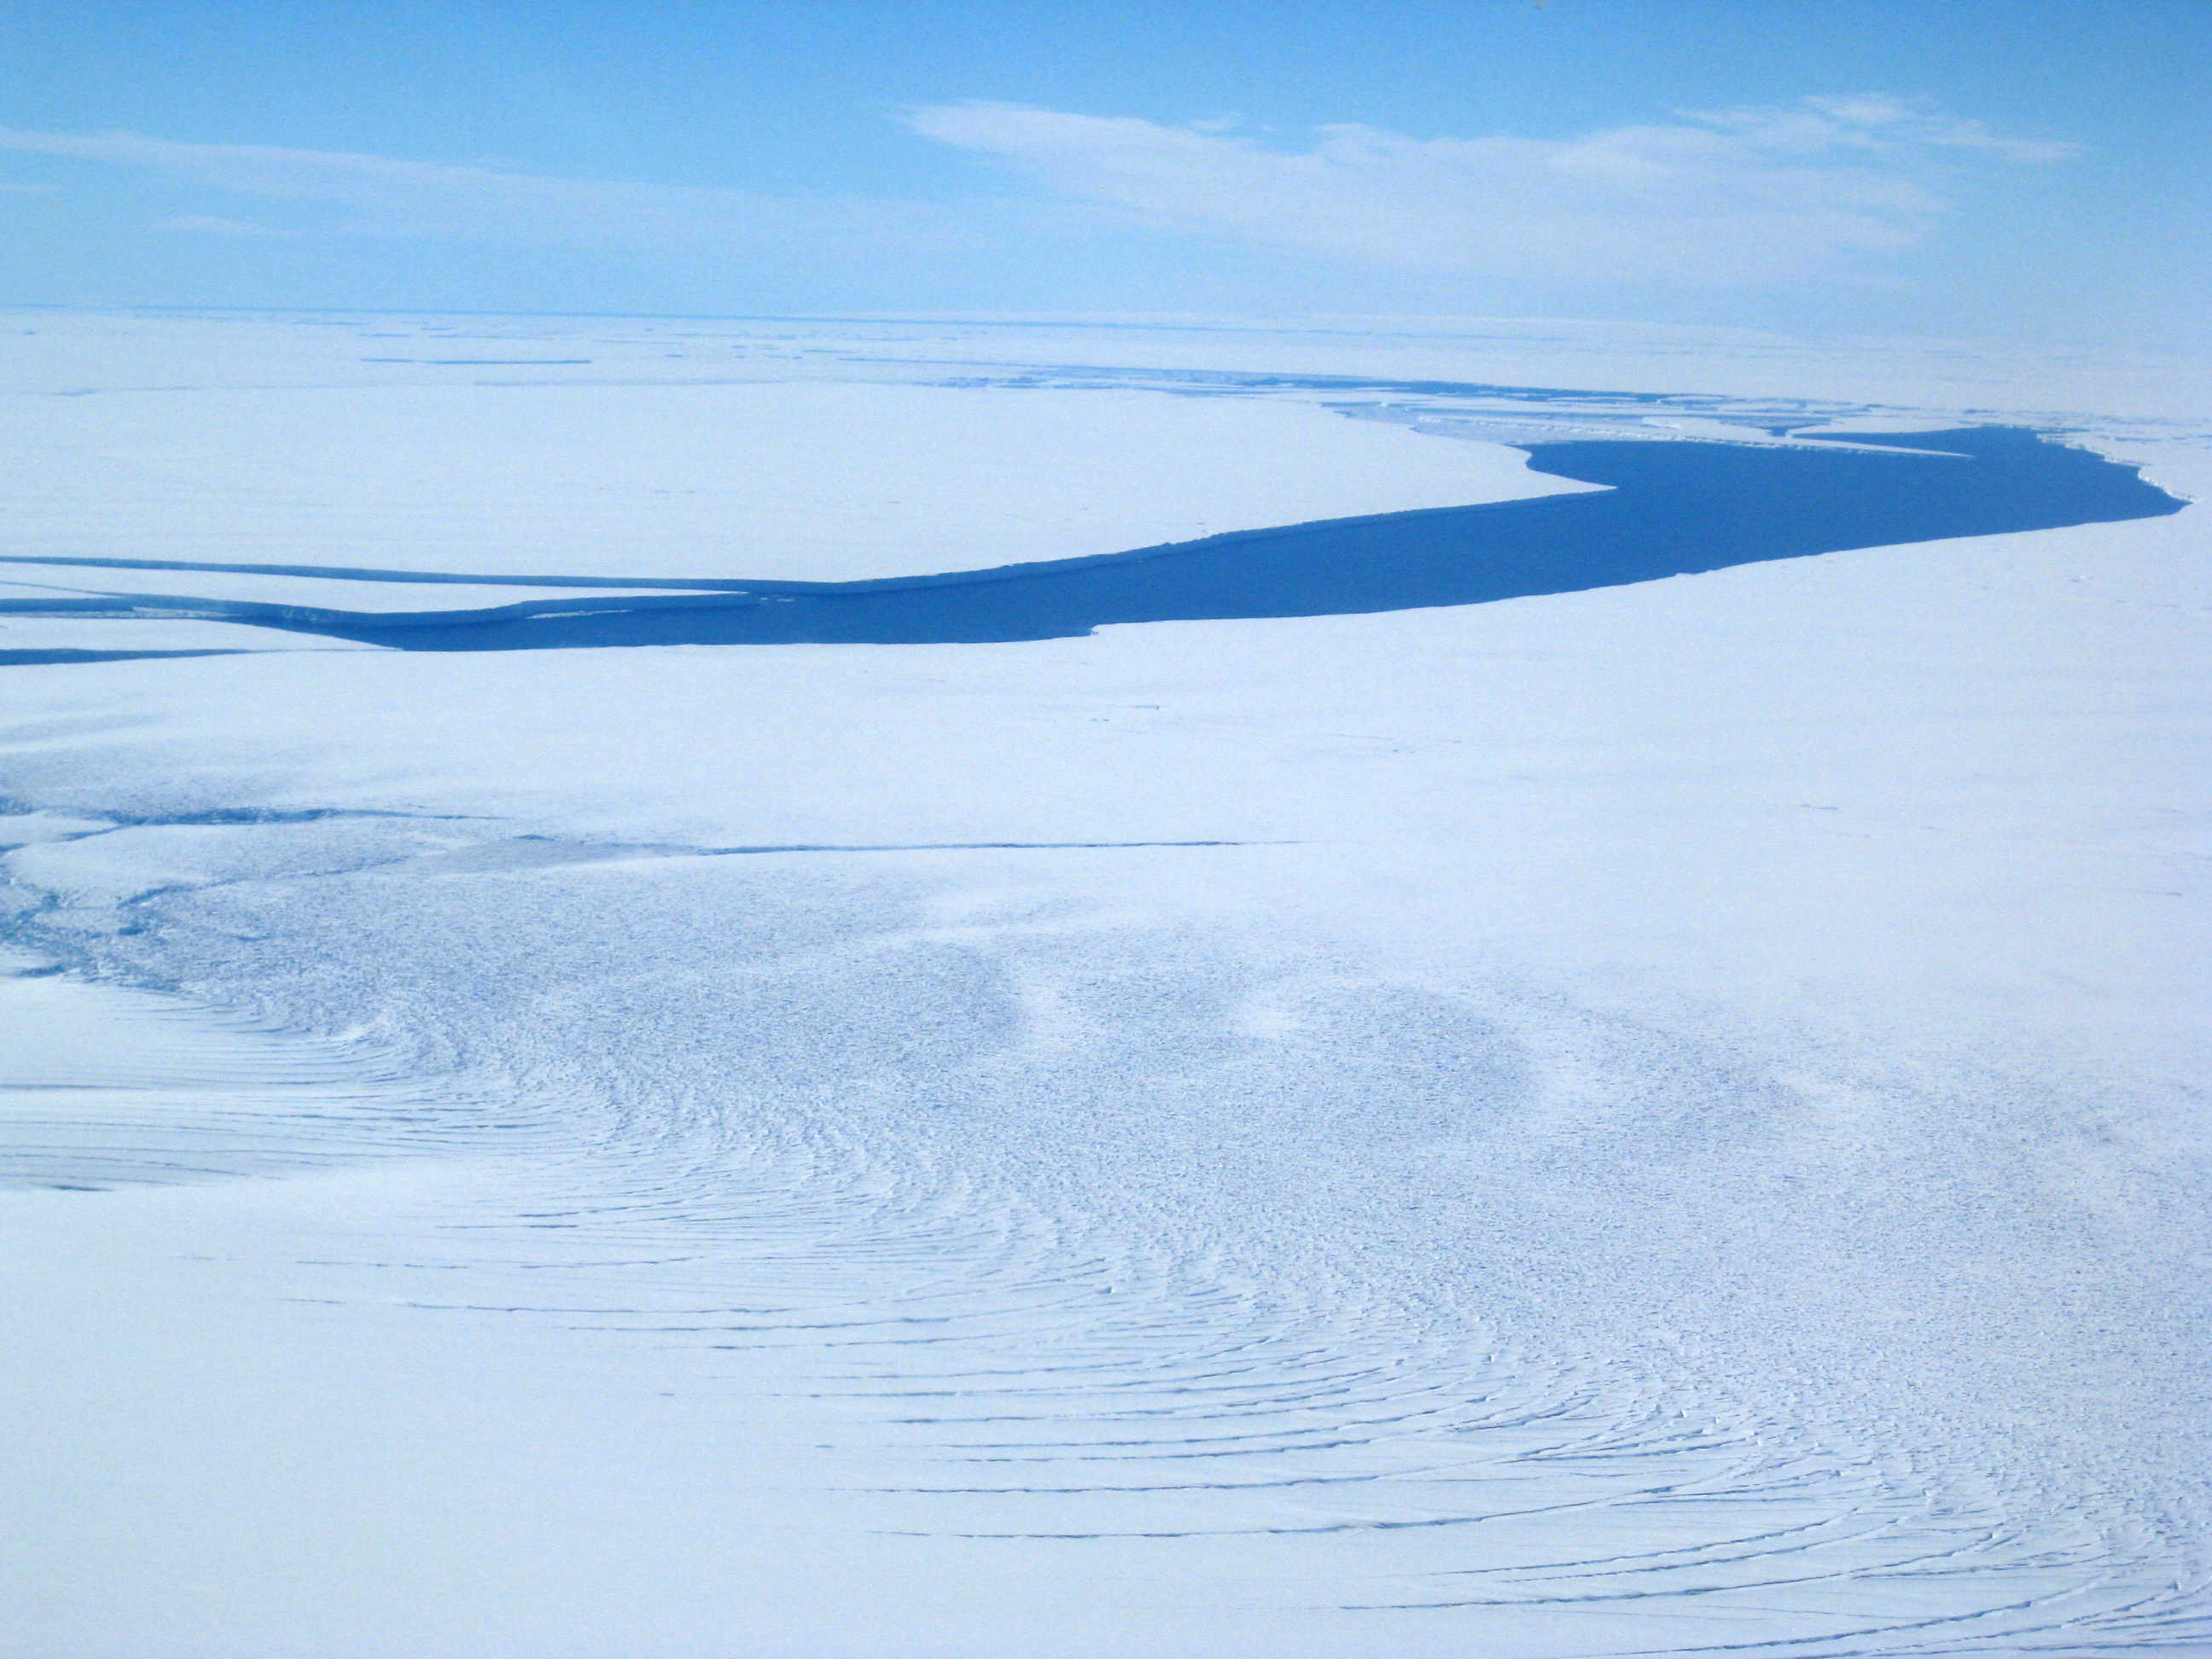 Antarctica's Pine Island Glacier meets the ocean.